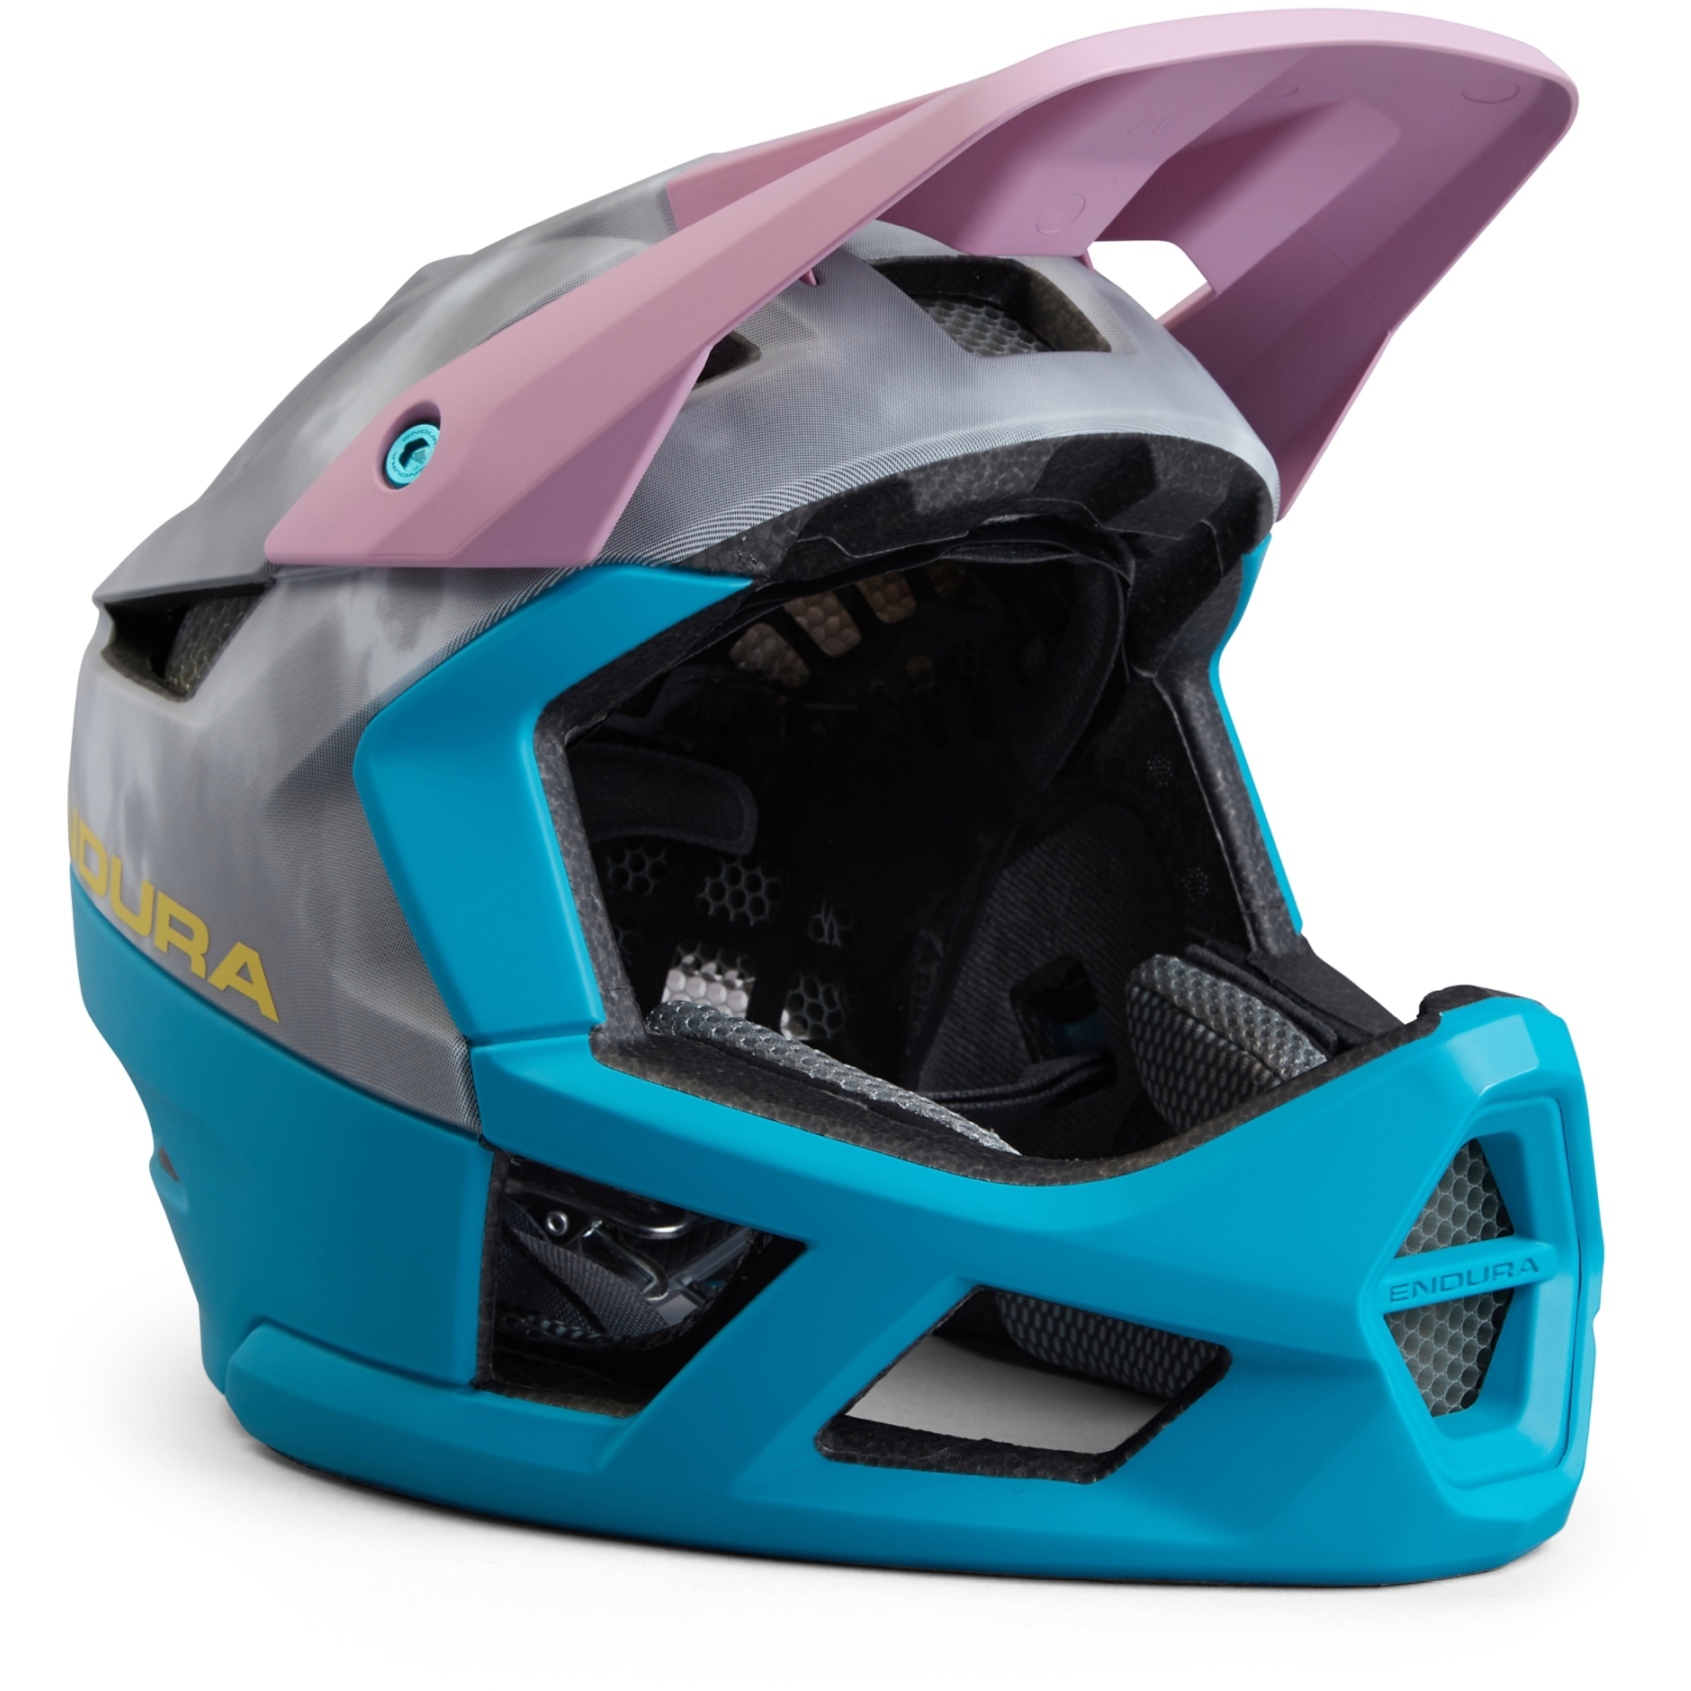 Produktbild von Endura MT500 Full Face Helm - grau